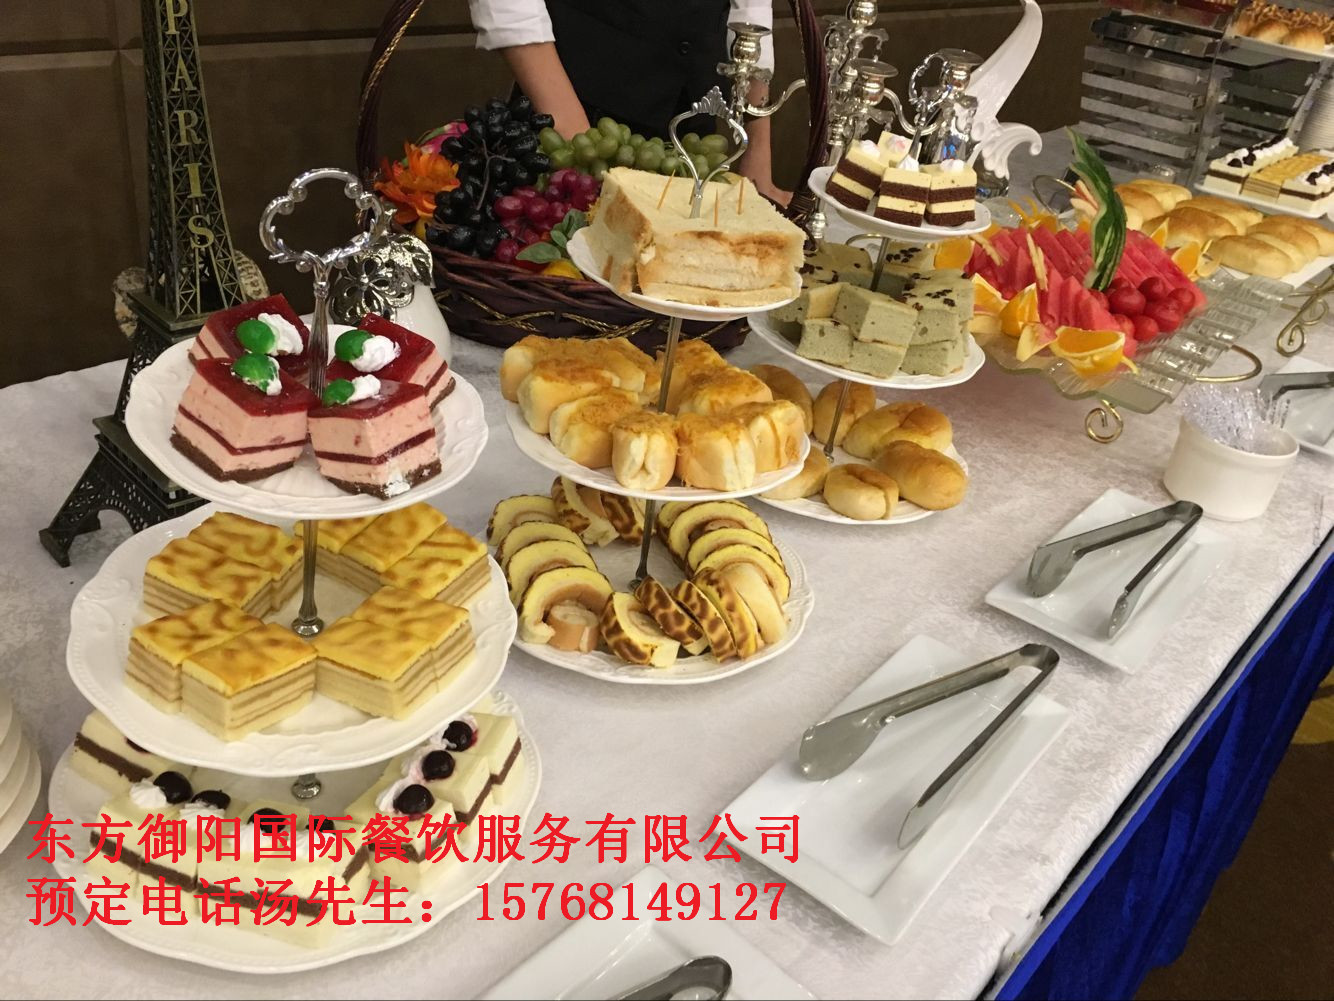 深圳市宴会自助餐上门厂家